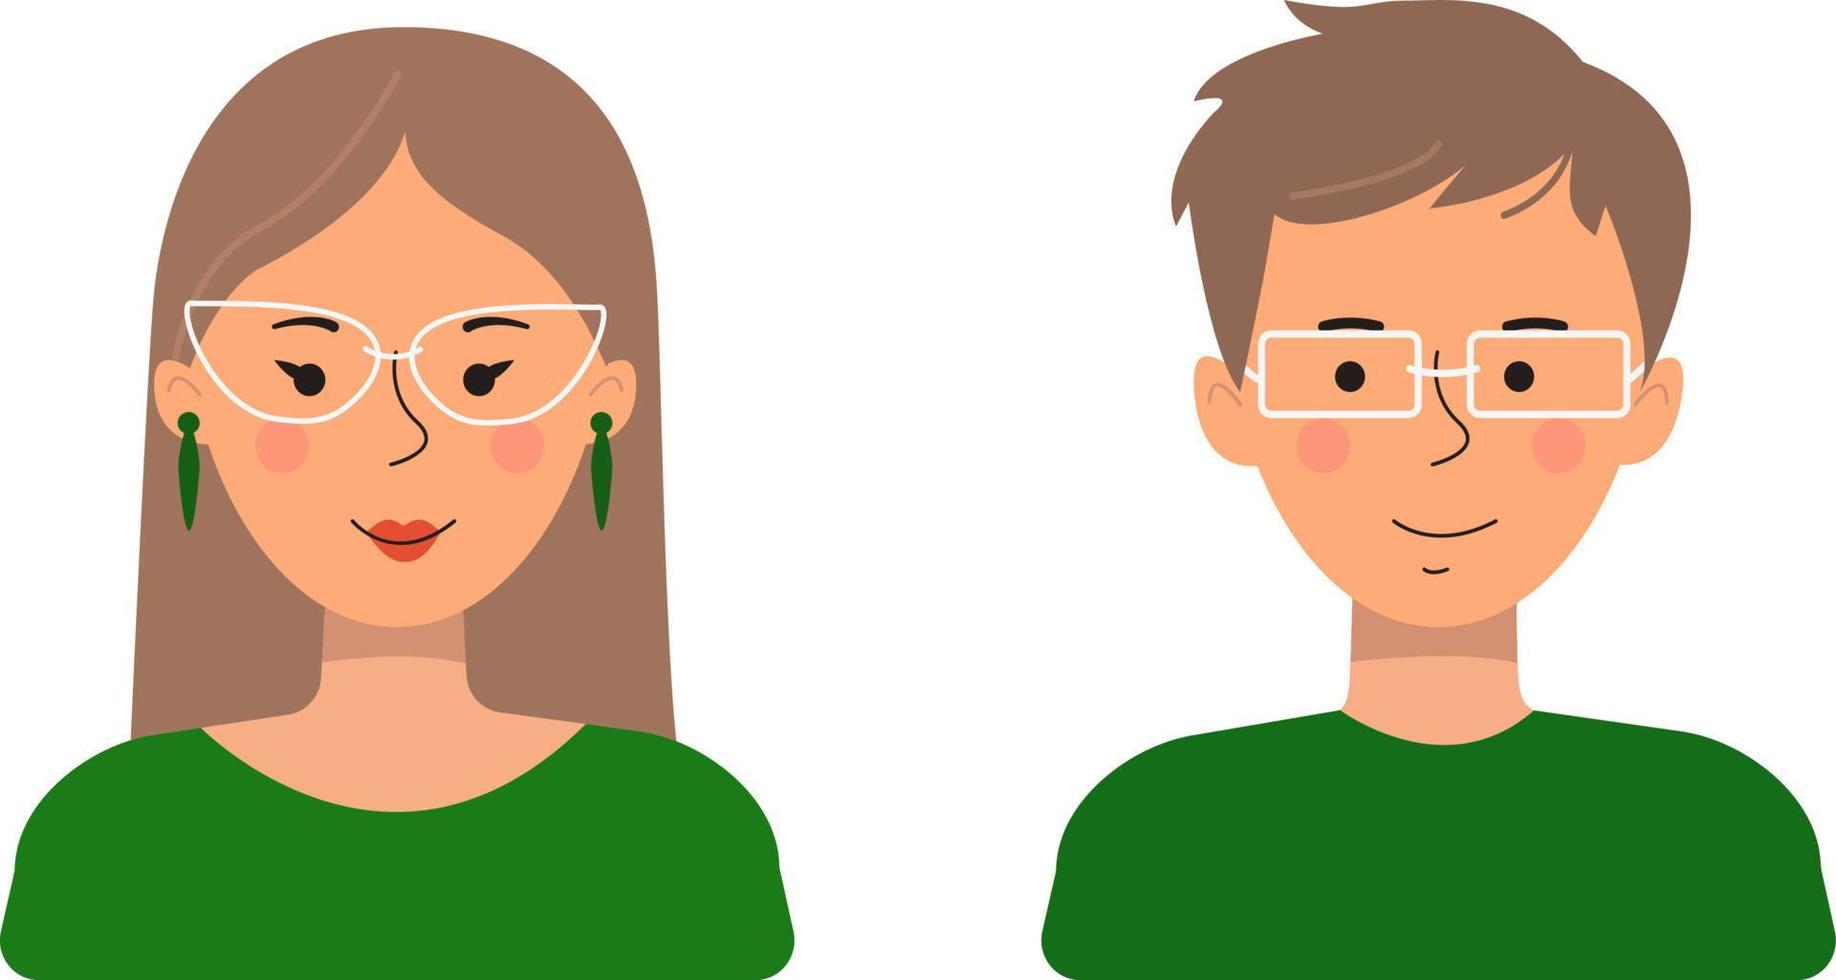 Avatare von Menschen in einem flachen Stil. Vektorillustration eines Mannes und einer Frau, die auf einem weißen Hintergrund isoliert sind. vektor